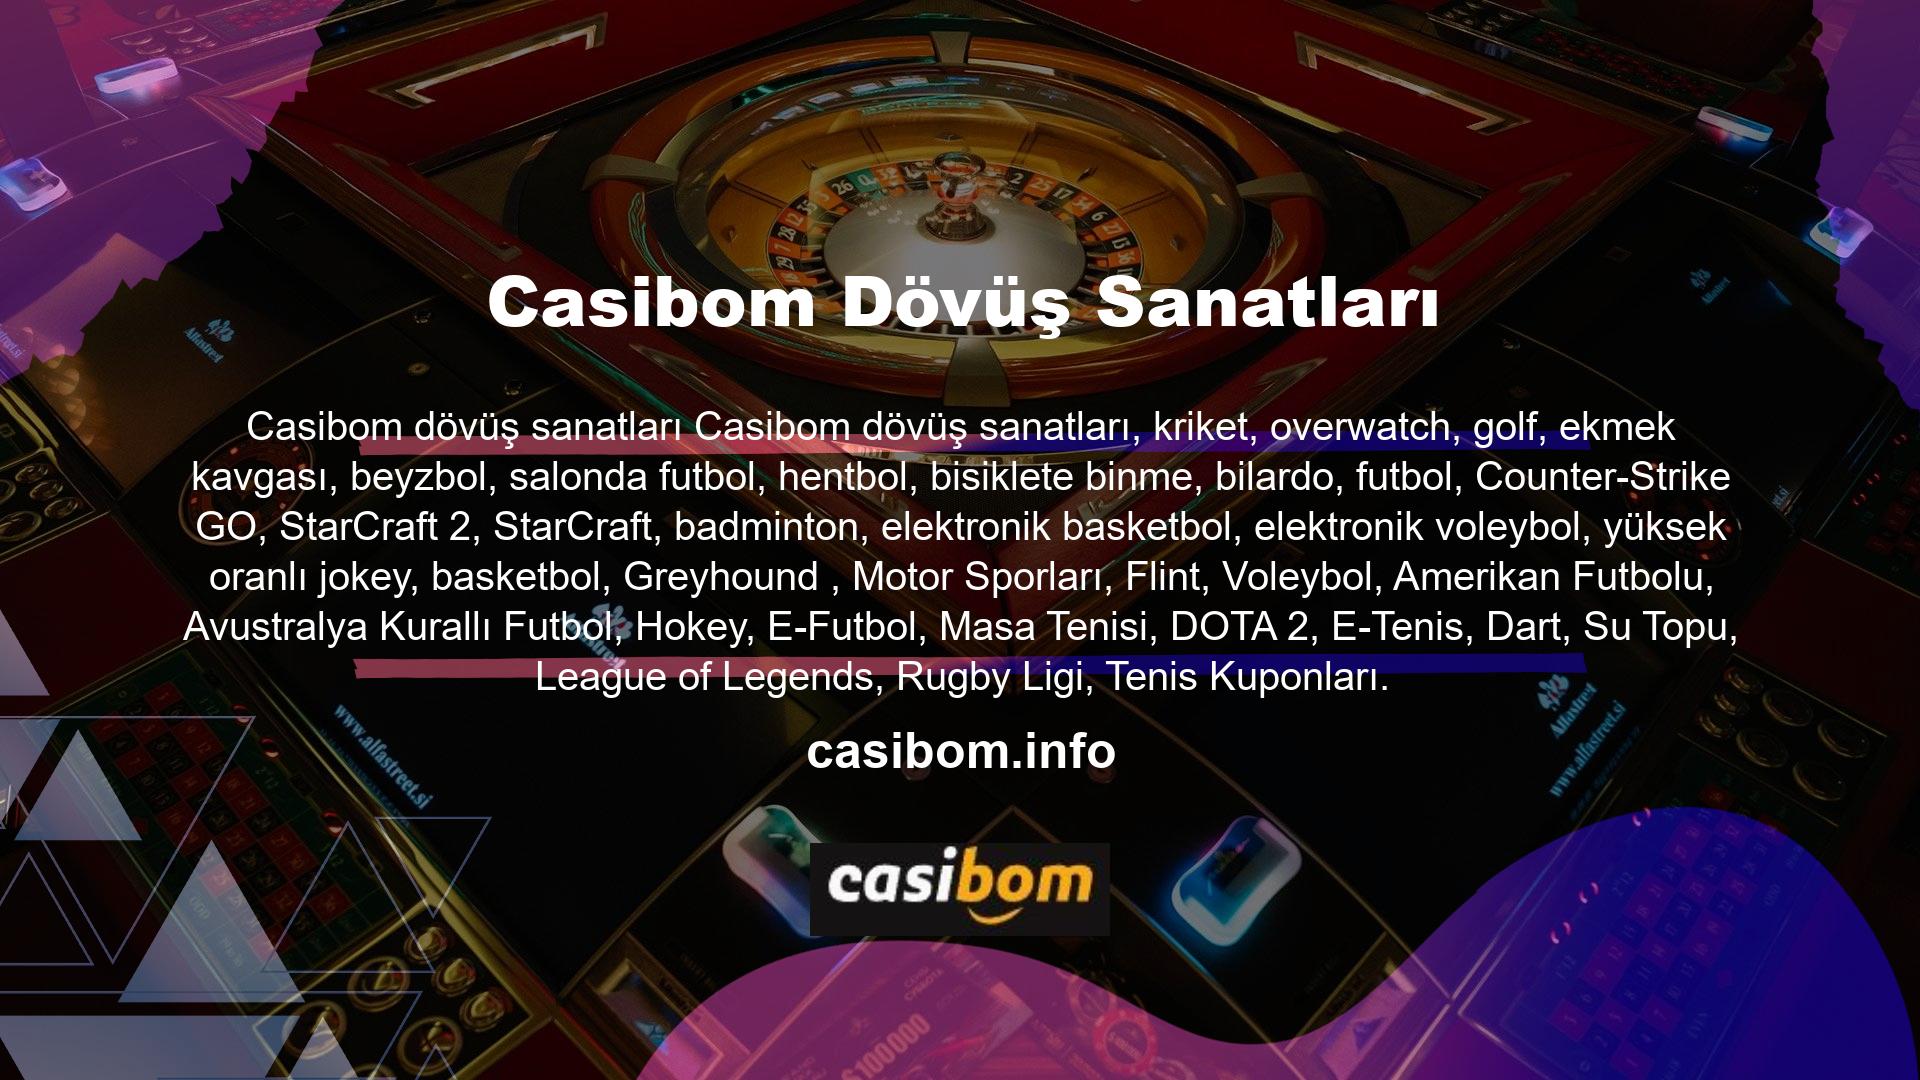 Çevrimiçi bahis yapın ve Casibom ile para kazanın!Casibom Slots'taki en karlı oyunlar hangileridir? Slot makinelerinin, casino oyunlarıyla ilgili çoğu ilgiyi karşıladığı kabul edilir, ancak "Hangi Slotlar?" "Makine en karlı makine midir?" sorusu bunu karşılamaz